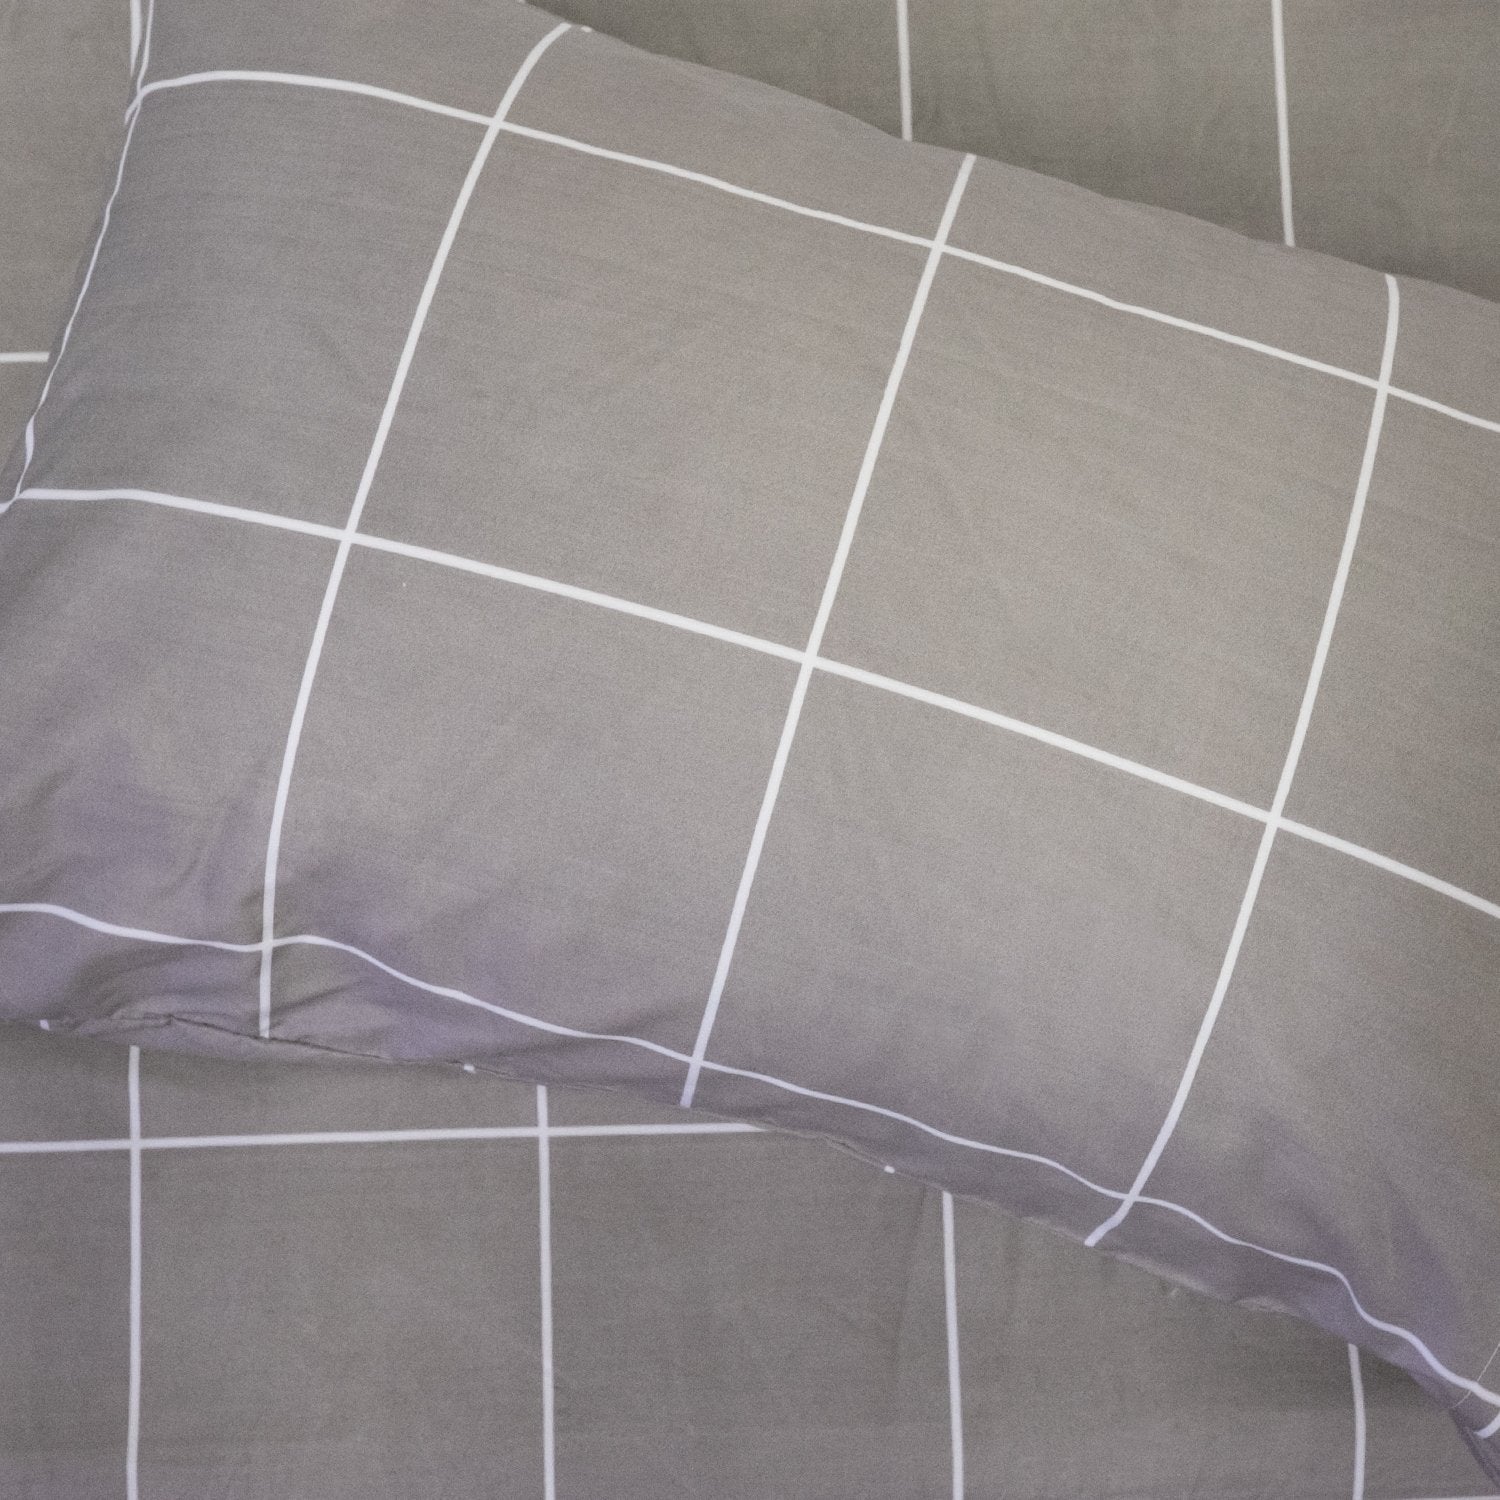 Deluxe 6-Piece Bed Sheet Set (Loft Window Pane Gray) - Top